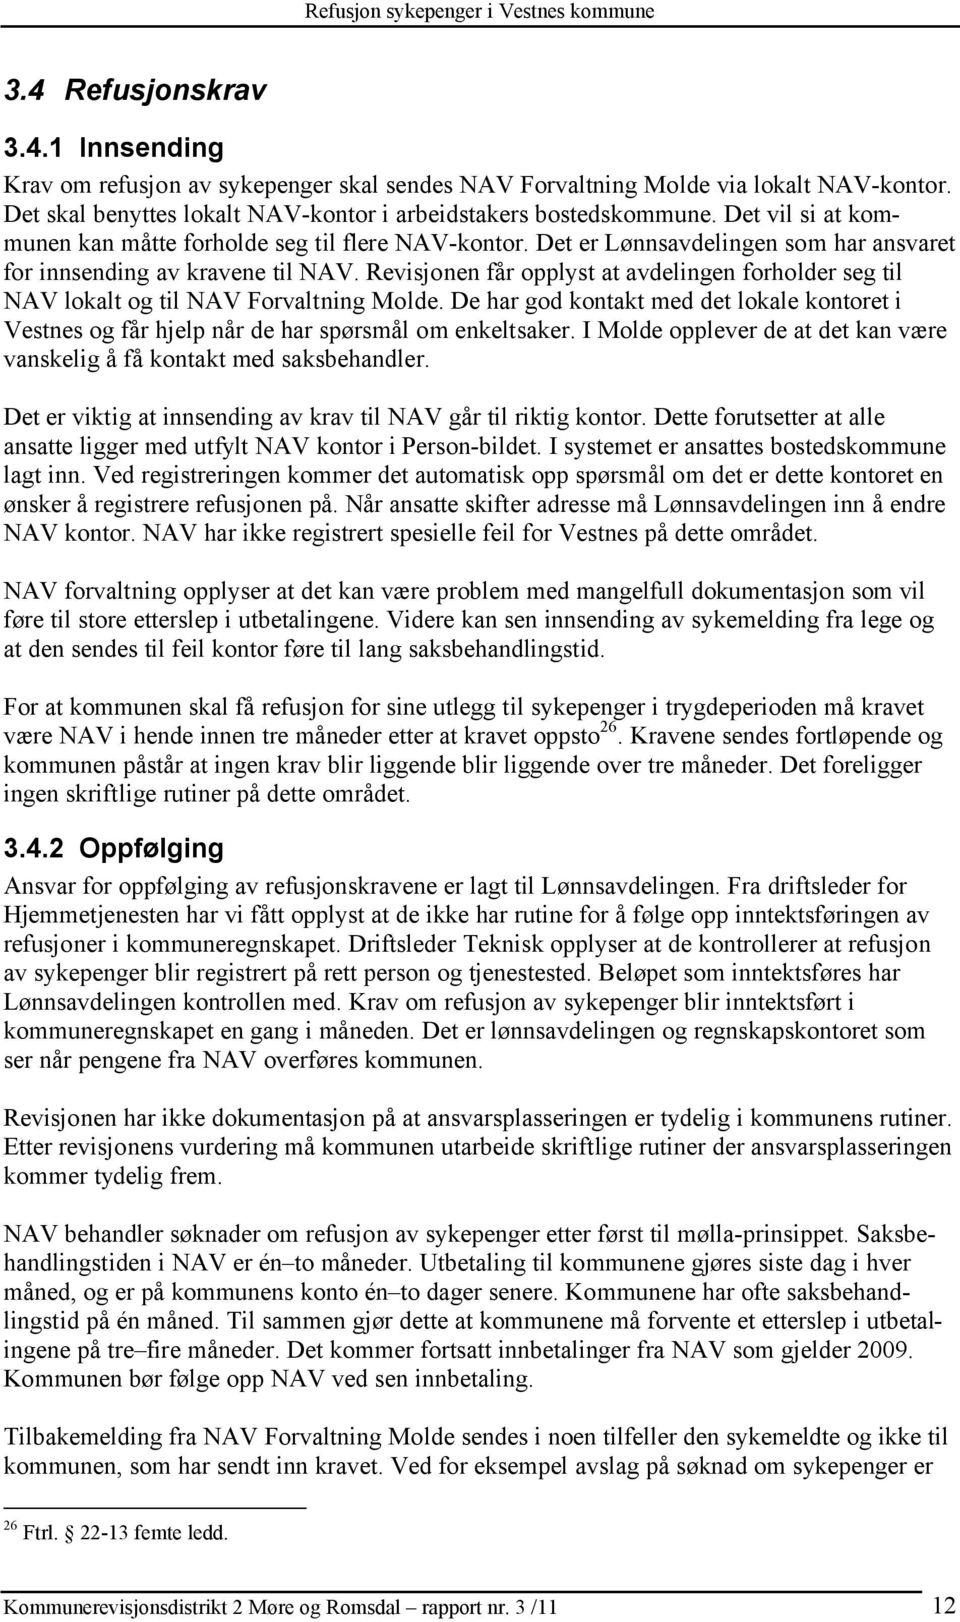 Revisjonen får opplyst at avdelingen forholder seg til NAV lokalt og til NAV Forvaltning Molde. De har god kontakt med det lokale kontoret i Vestnes og får hjelp når de har spørsmål om enkeltsaker.